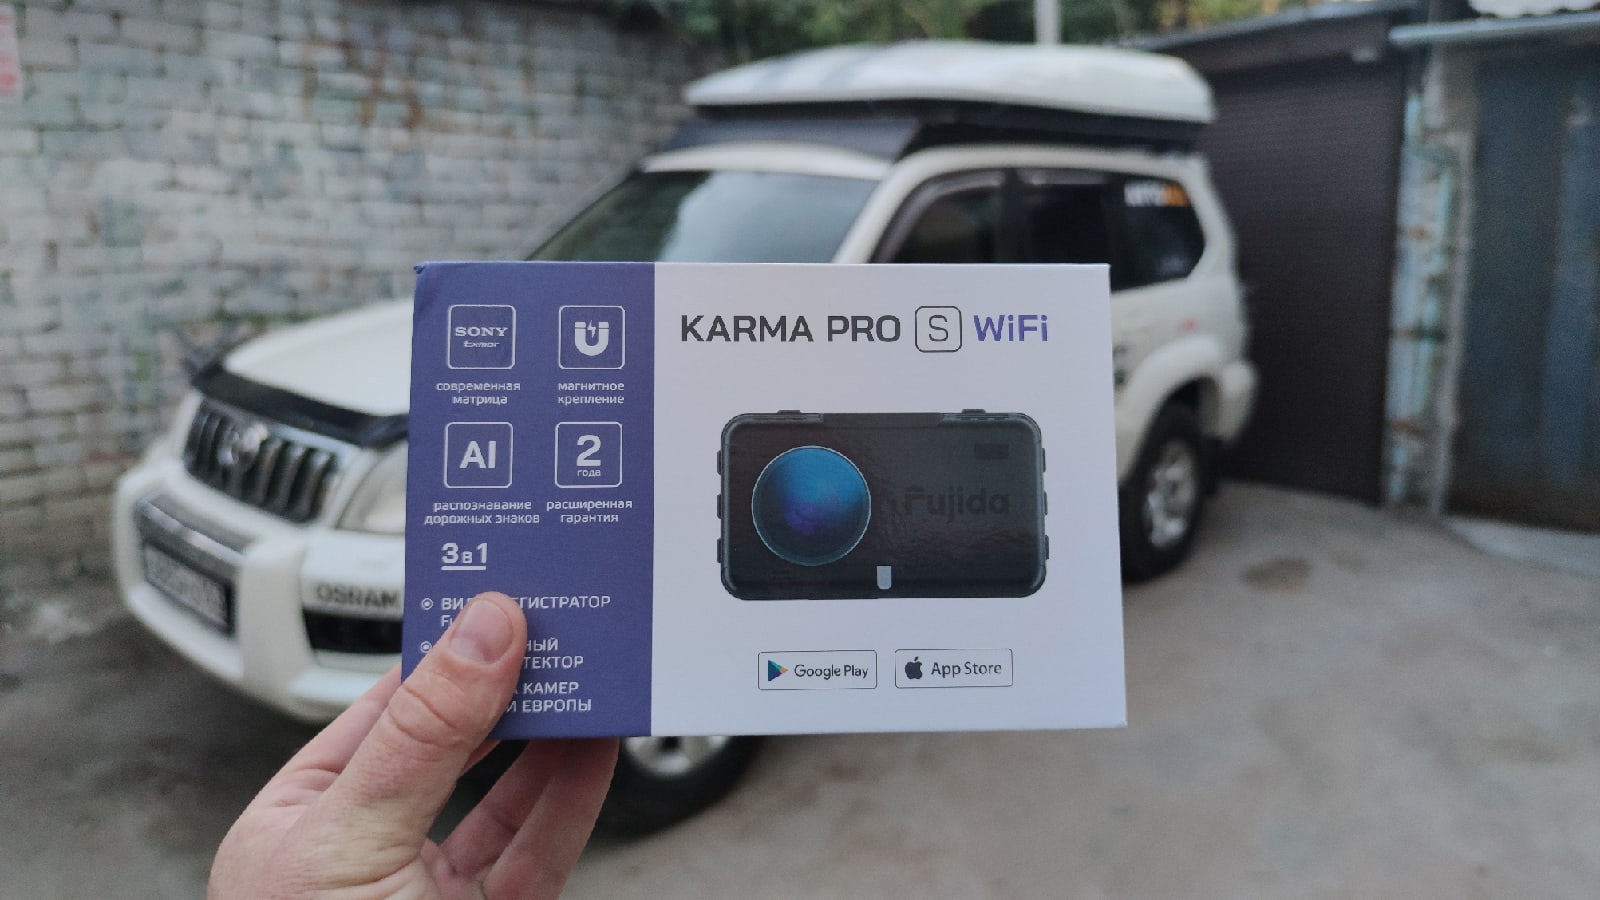 Регистратор карма. Fujida Karma Pro s WIFI коробка. Fujida Karma Pro s WIFI. Fujida Karma Pro s в упаковке. Упаковка Karma Pro s Wi Fi.